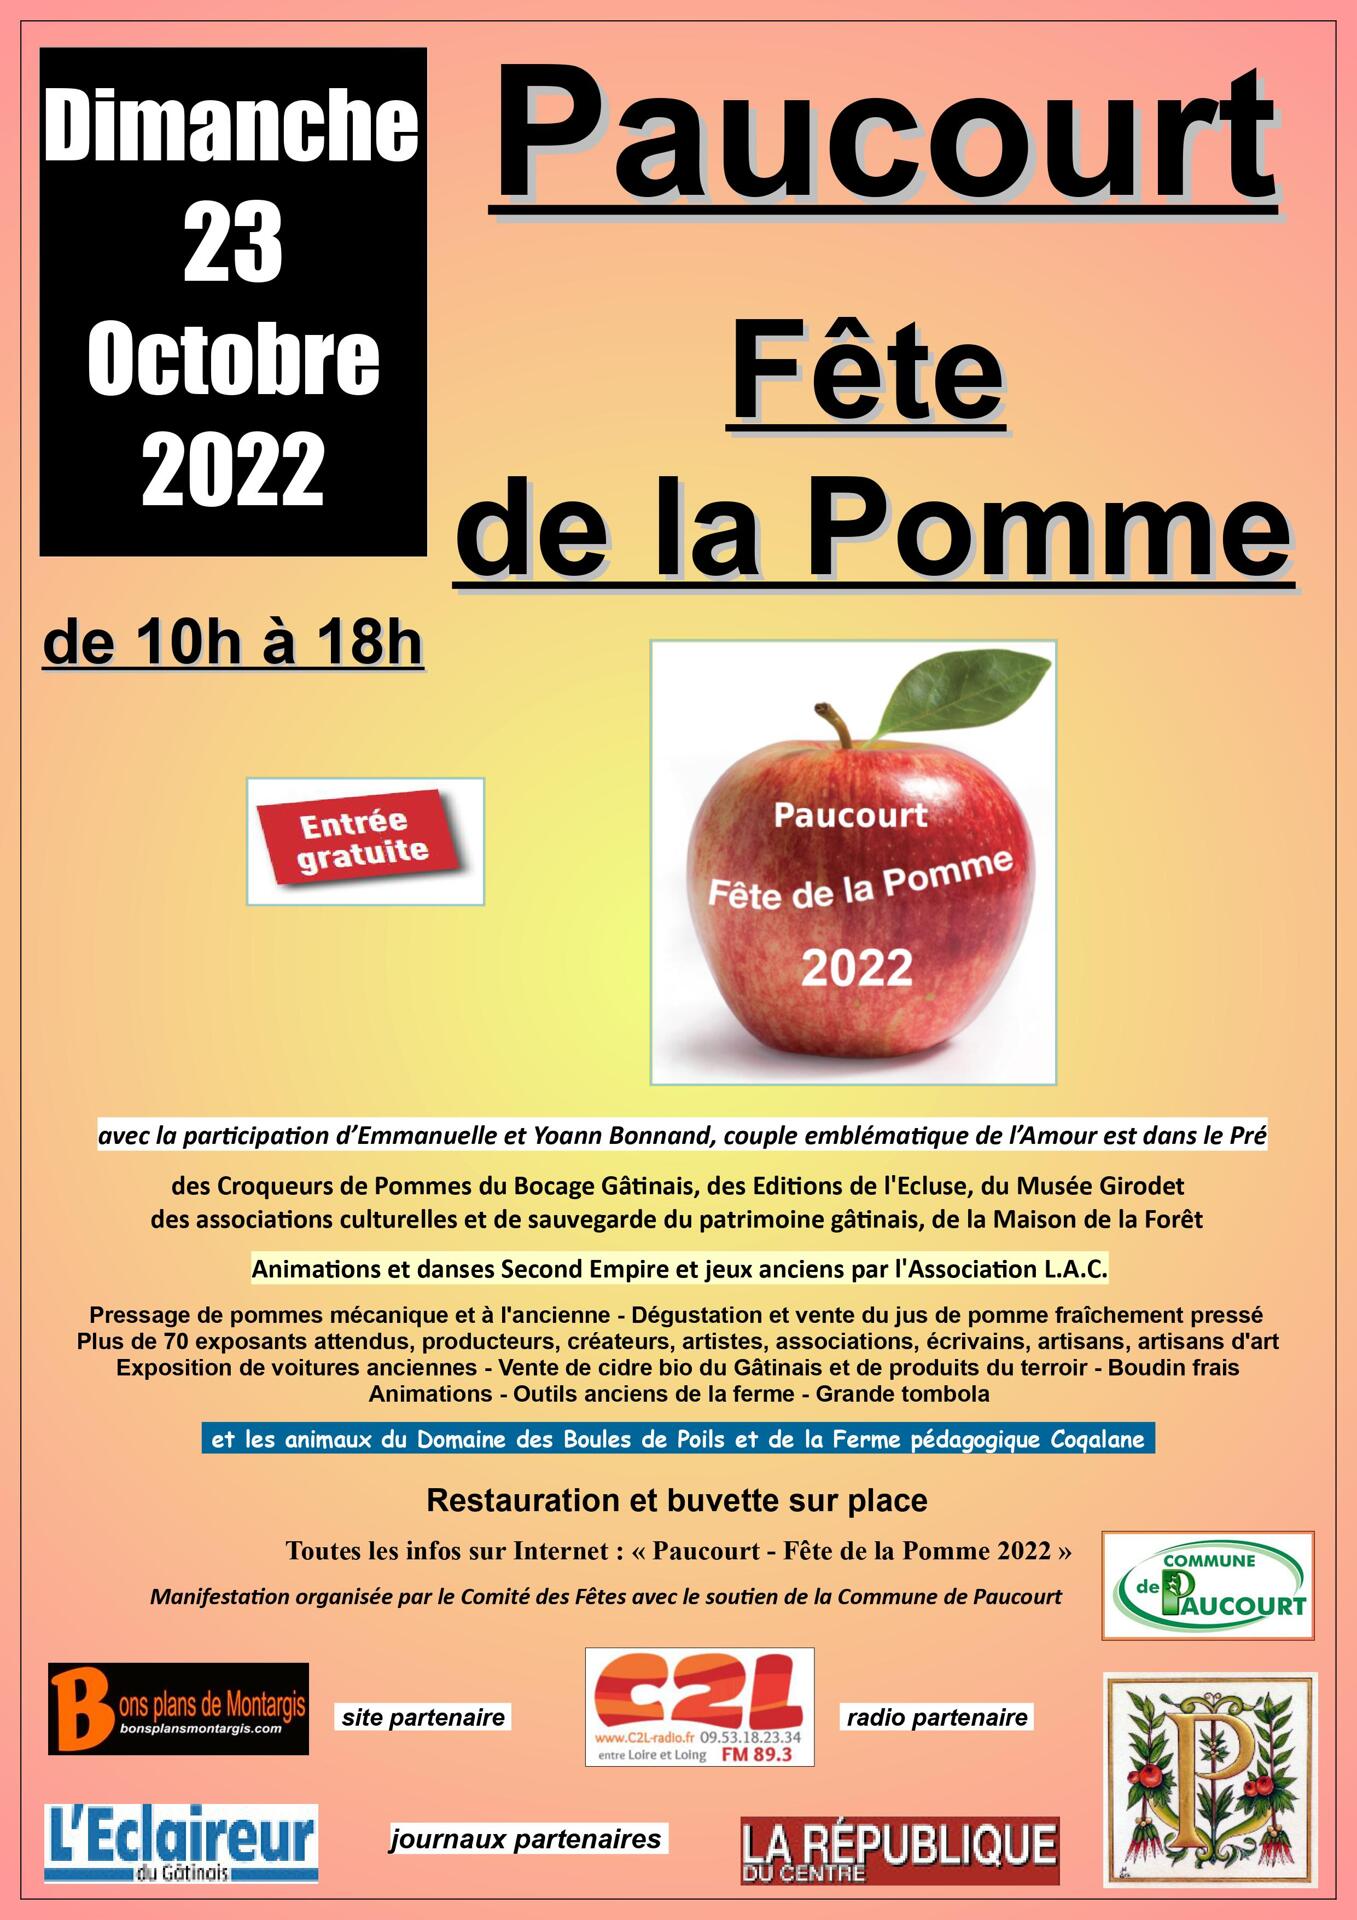 La 9ème Fête de la Pomme aura lieu le dimanche 23 Octobre 2022.<br />
Ouverture au public de 10h à 18h.